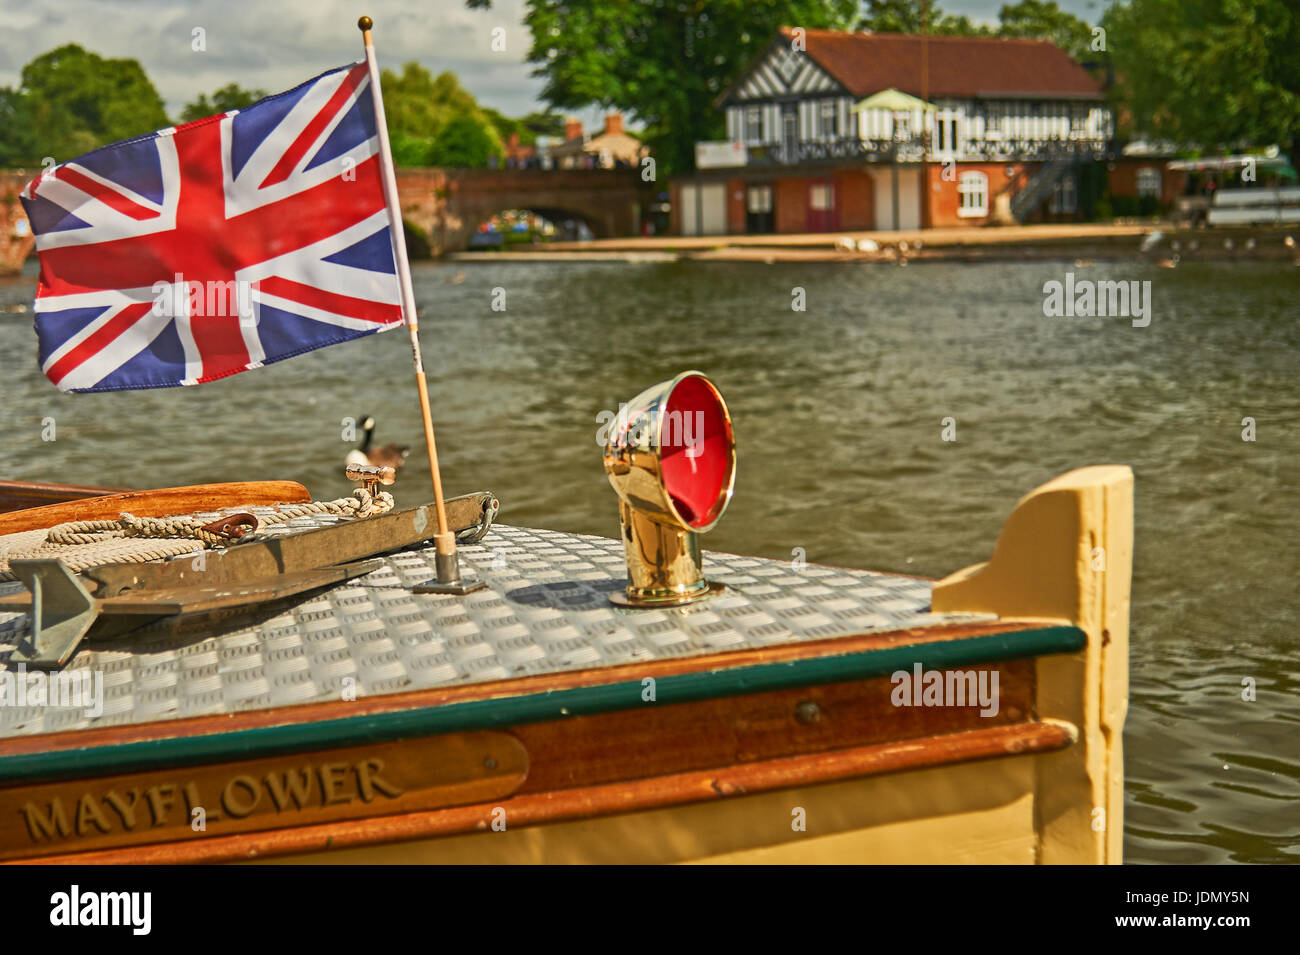 Touristischen Vergnügungsschiff Mayflower die Union Jack-Flagge von Bögen, an einem Sommertag Samstag in Stratford-upon-Avon Stockfoto